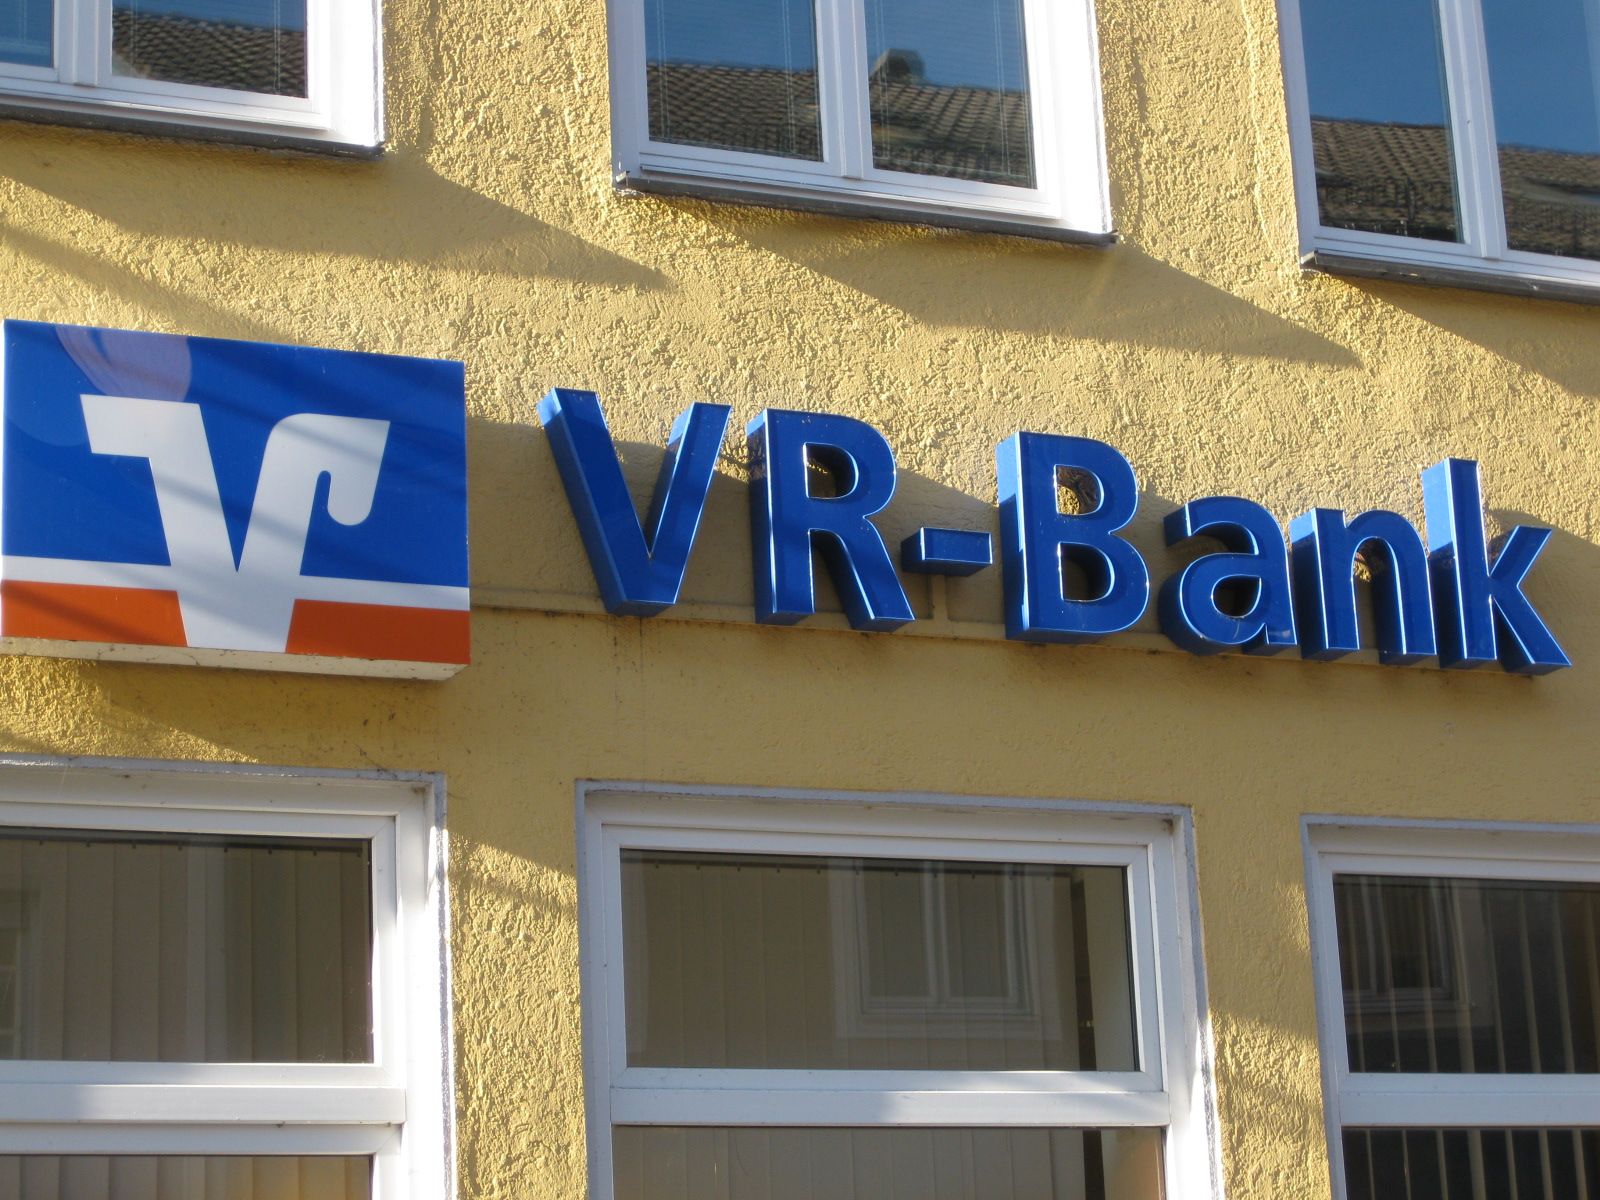 VR-Bank Erding eG in Erding ⇒ in Das Örtliche